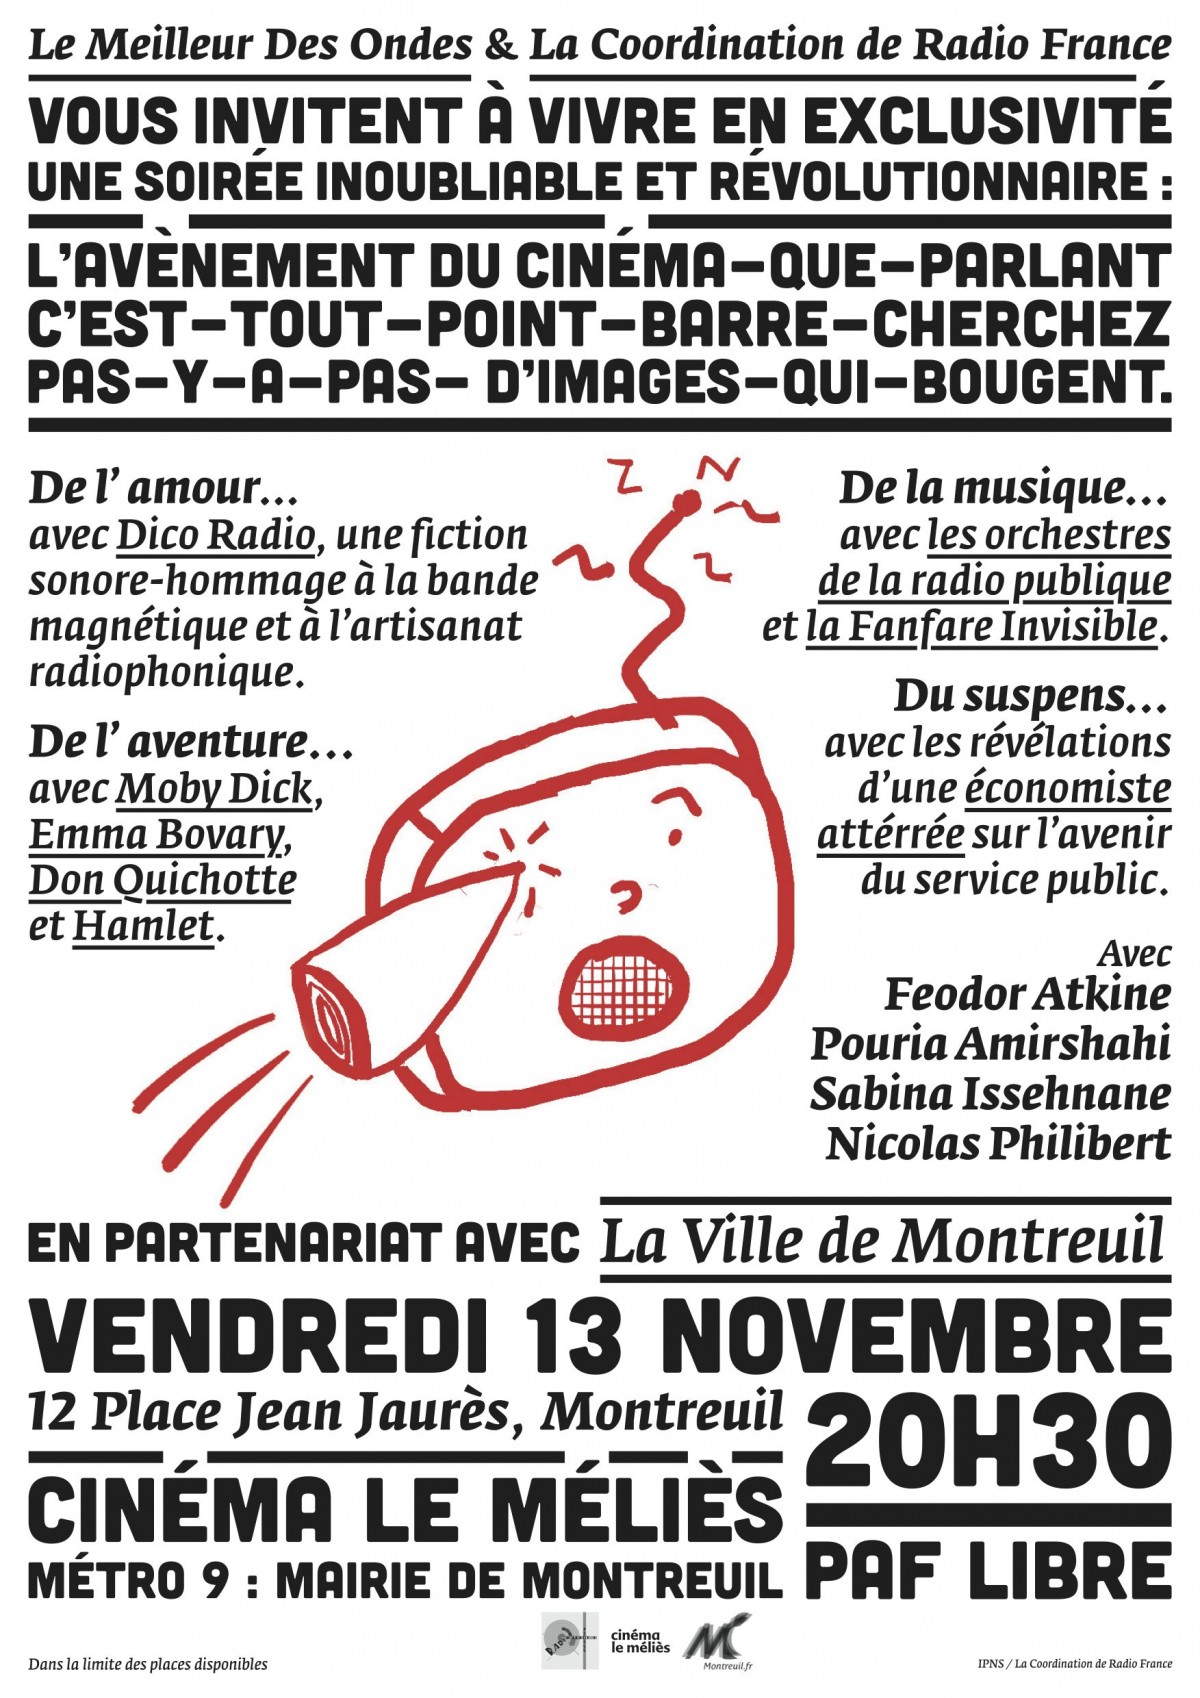 Affiche-Soiree-LeMeilleurdesondes-cinema-Melies-nov2015